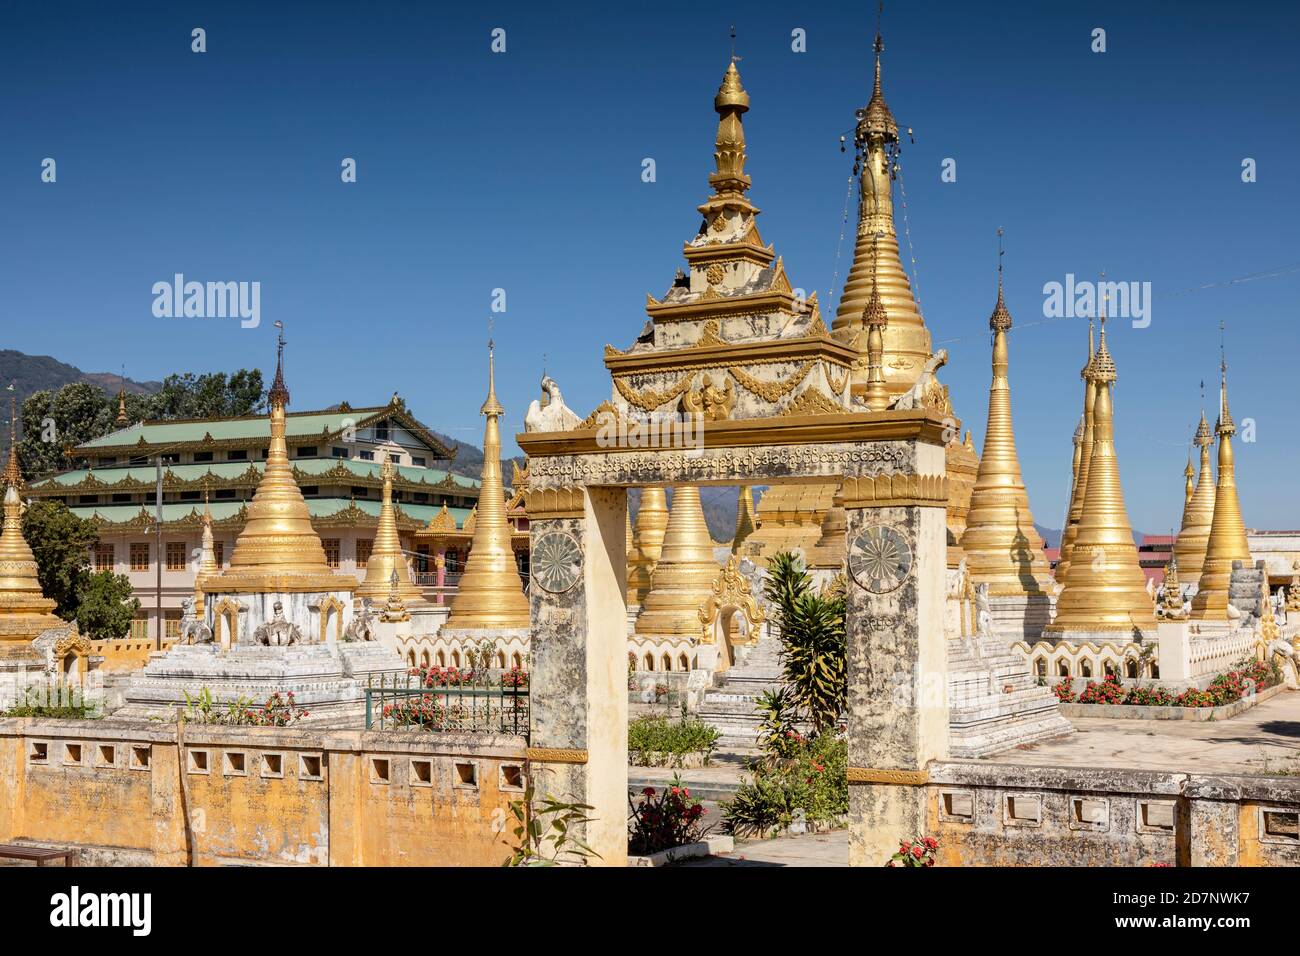 Golden stupas of the Pindaya monastery, Myanmar Stock Photo